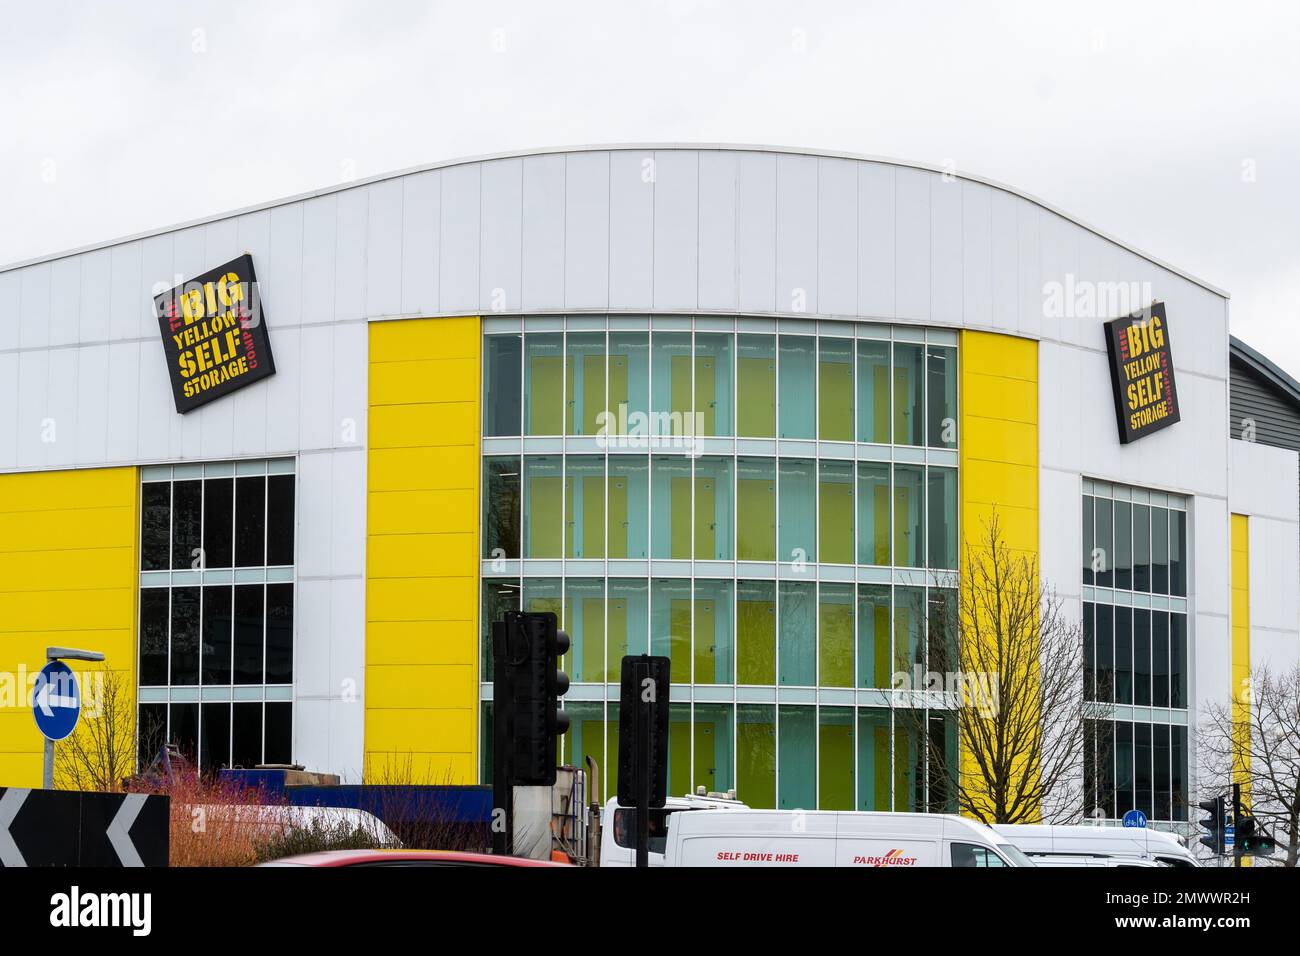 The Big Yellow Self Storage Company sur le bâtiment de stockage, sur un rond-point animé à Camberley, Angleterre, Royaume-Uni Banque D'Images